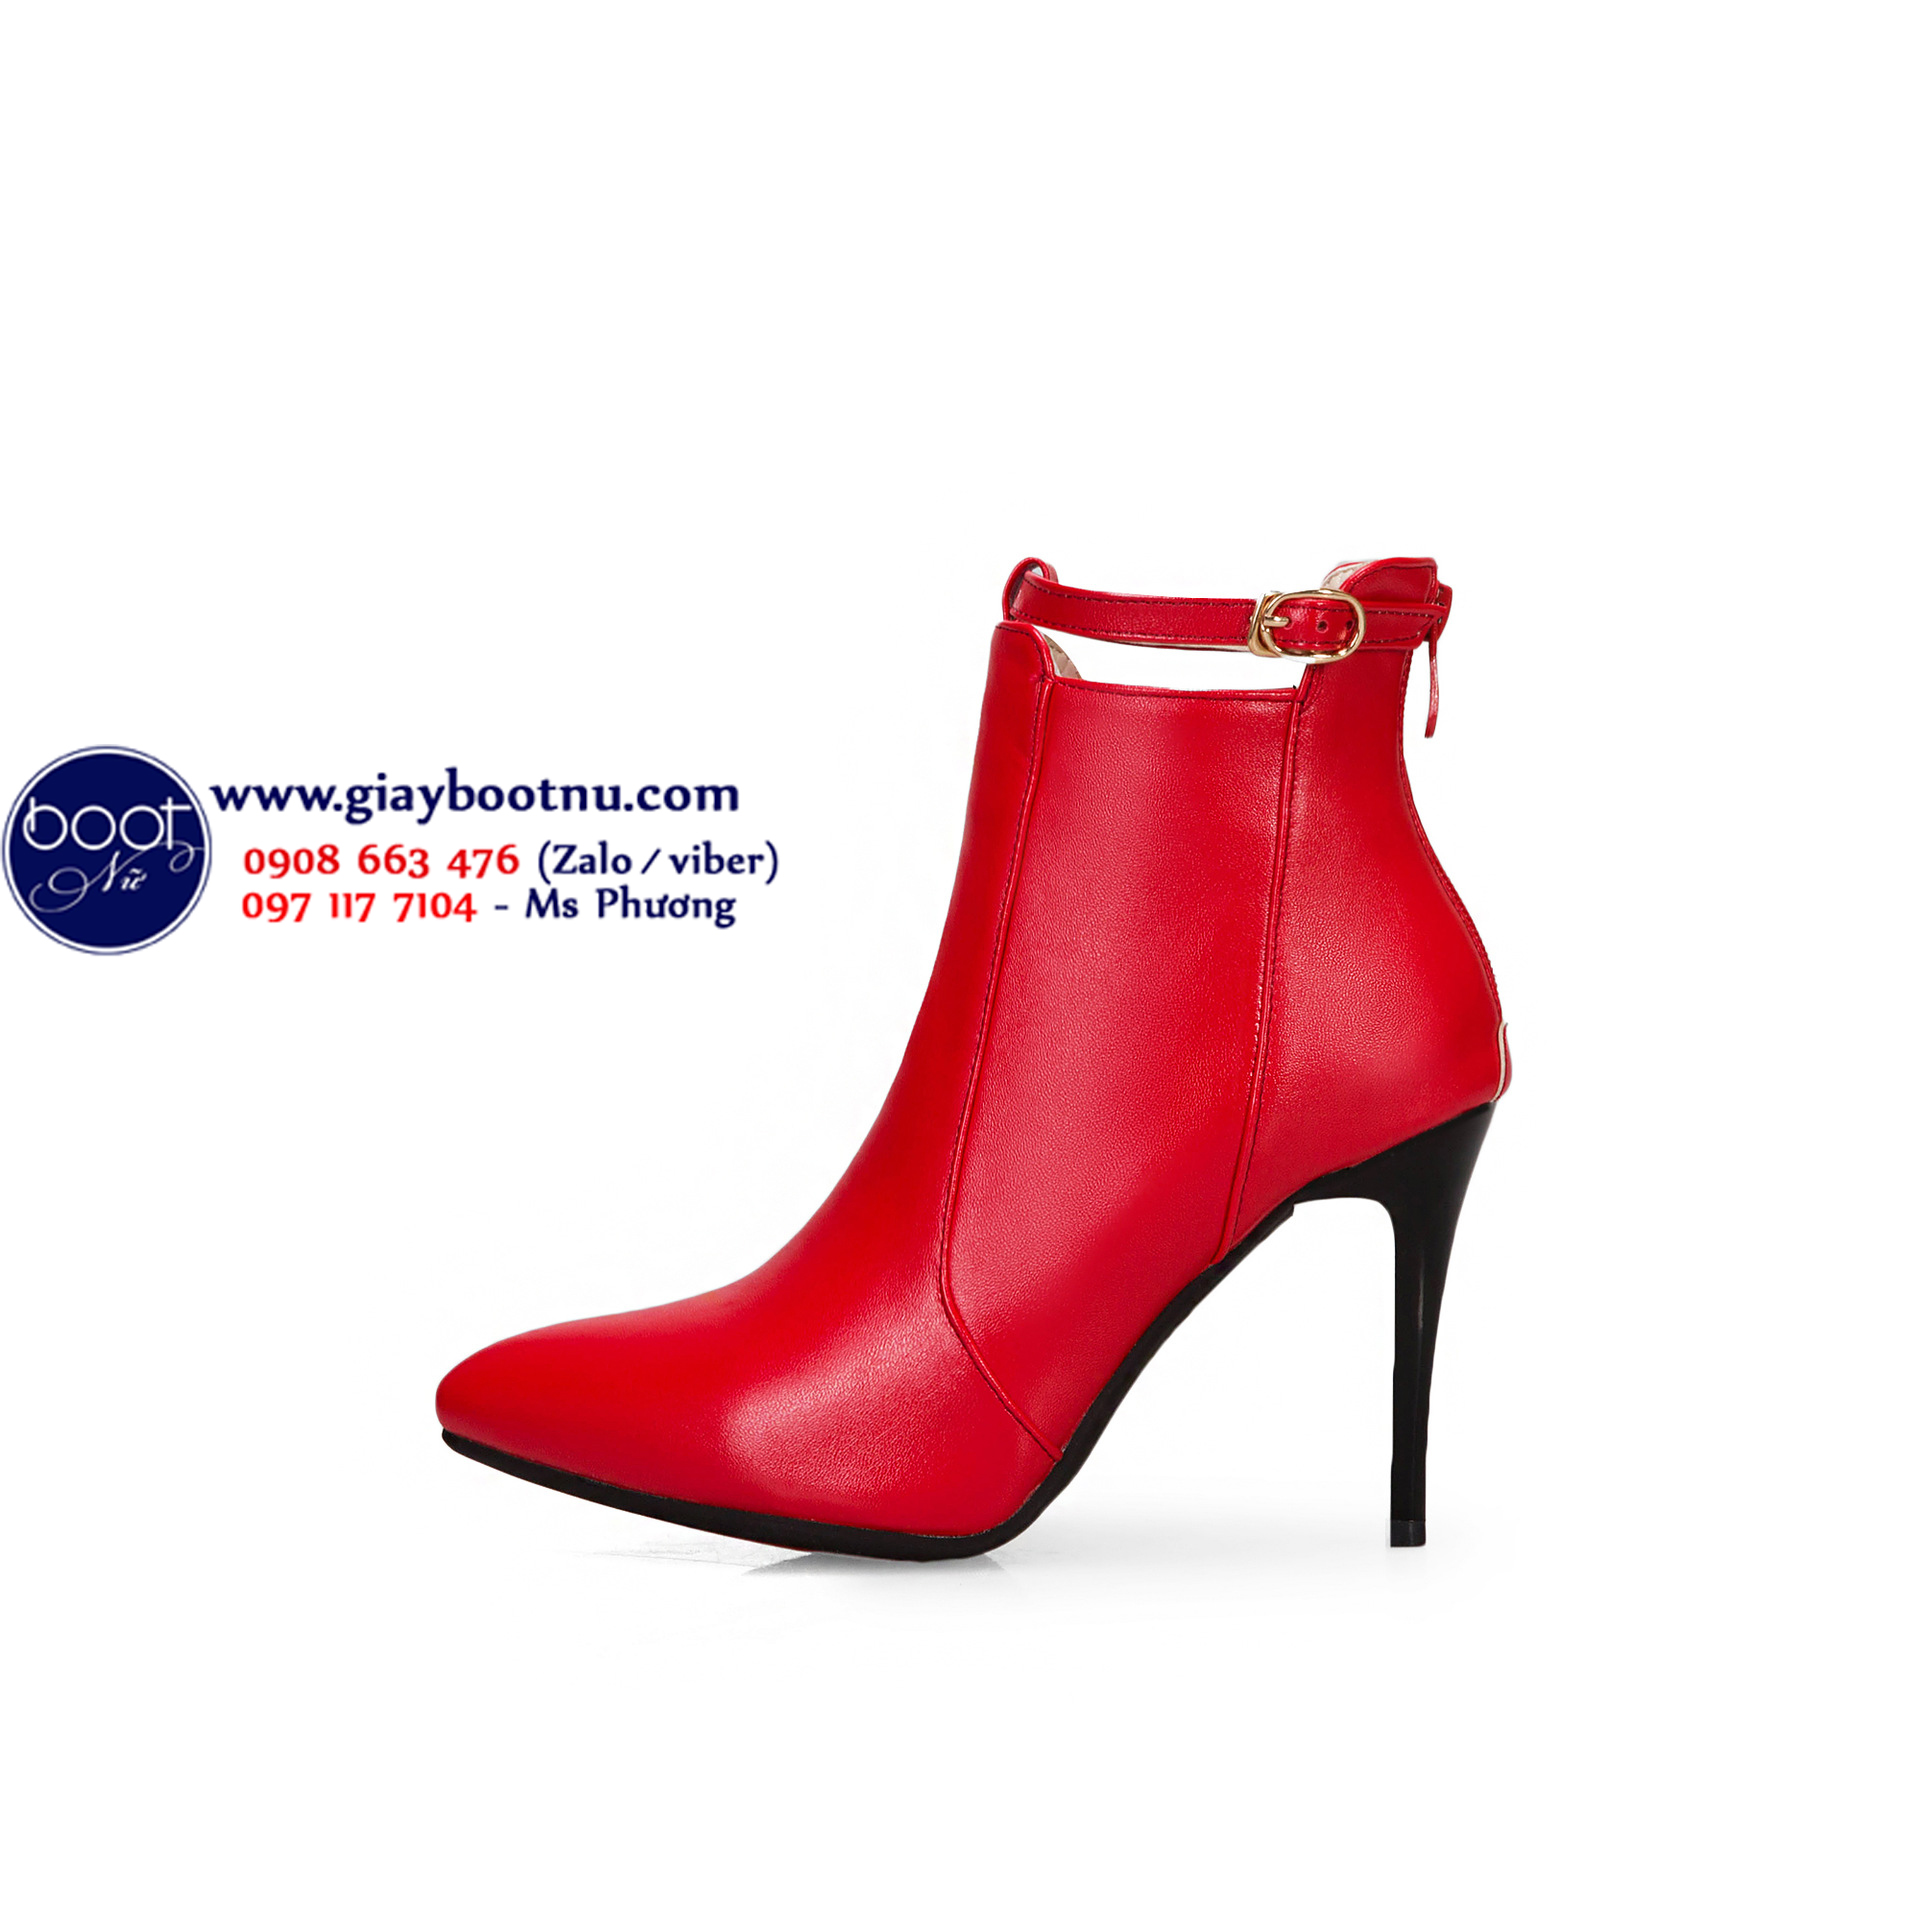 Boot nữ cổ ngắn gót nhọn màu đỏ HIỆN ĐẠI GBN6403